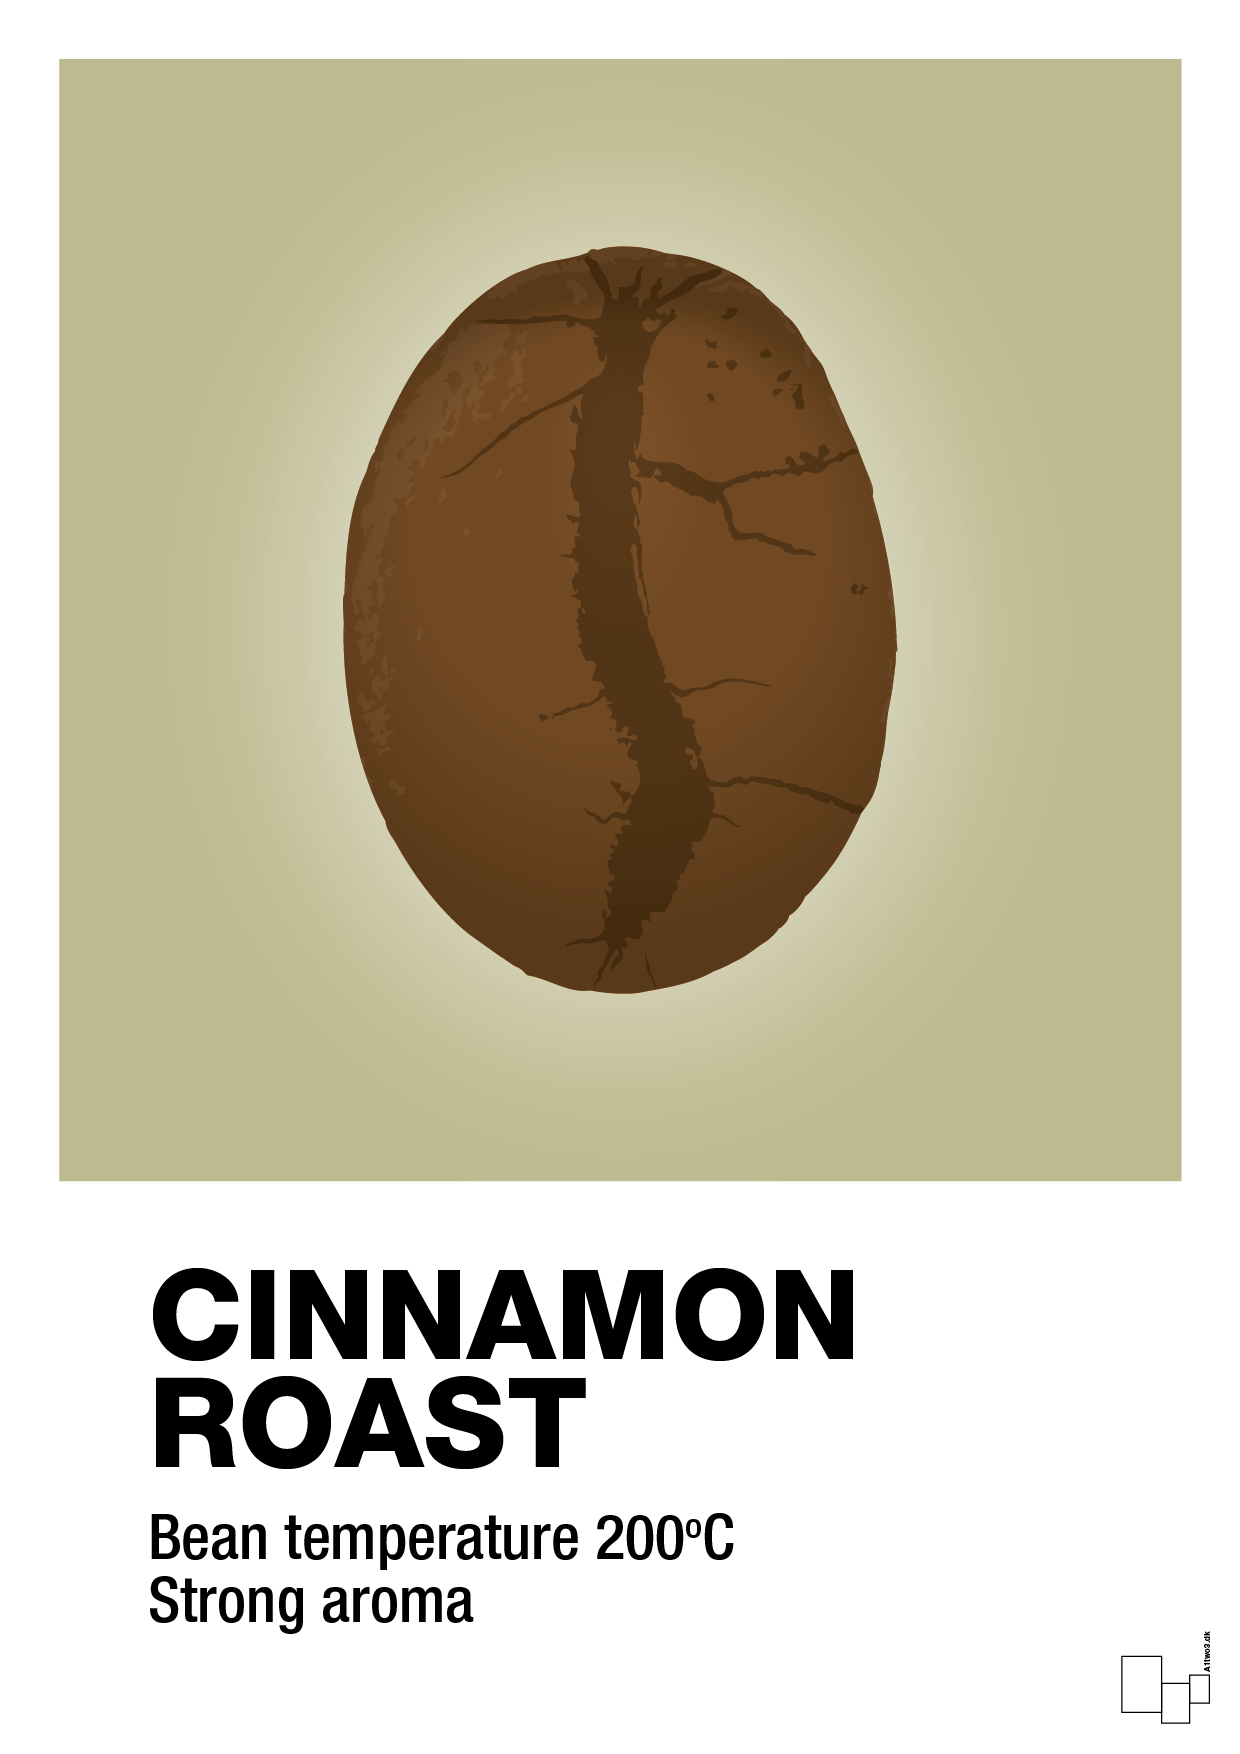 cinnamom roast - Plakat med Mad & Drikke i Back to Nature